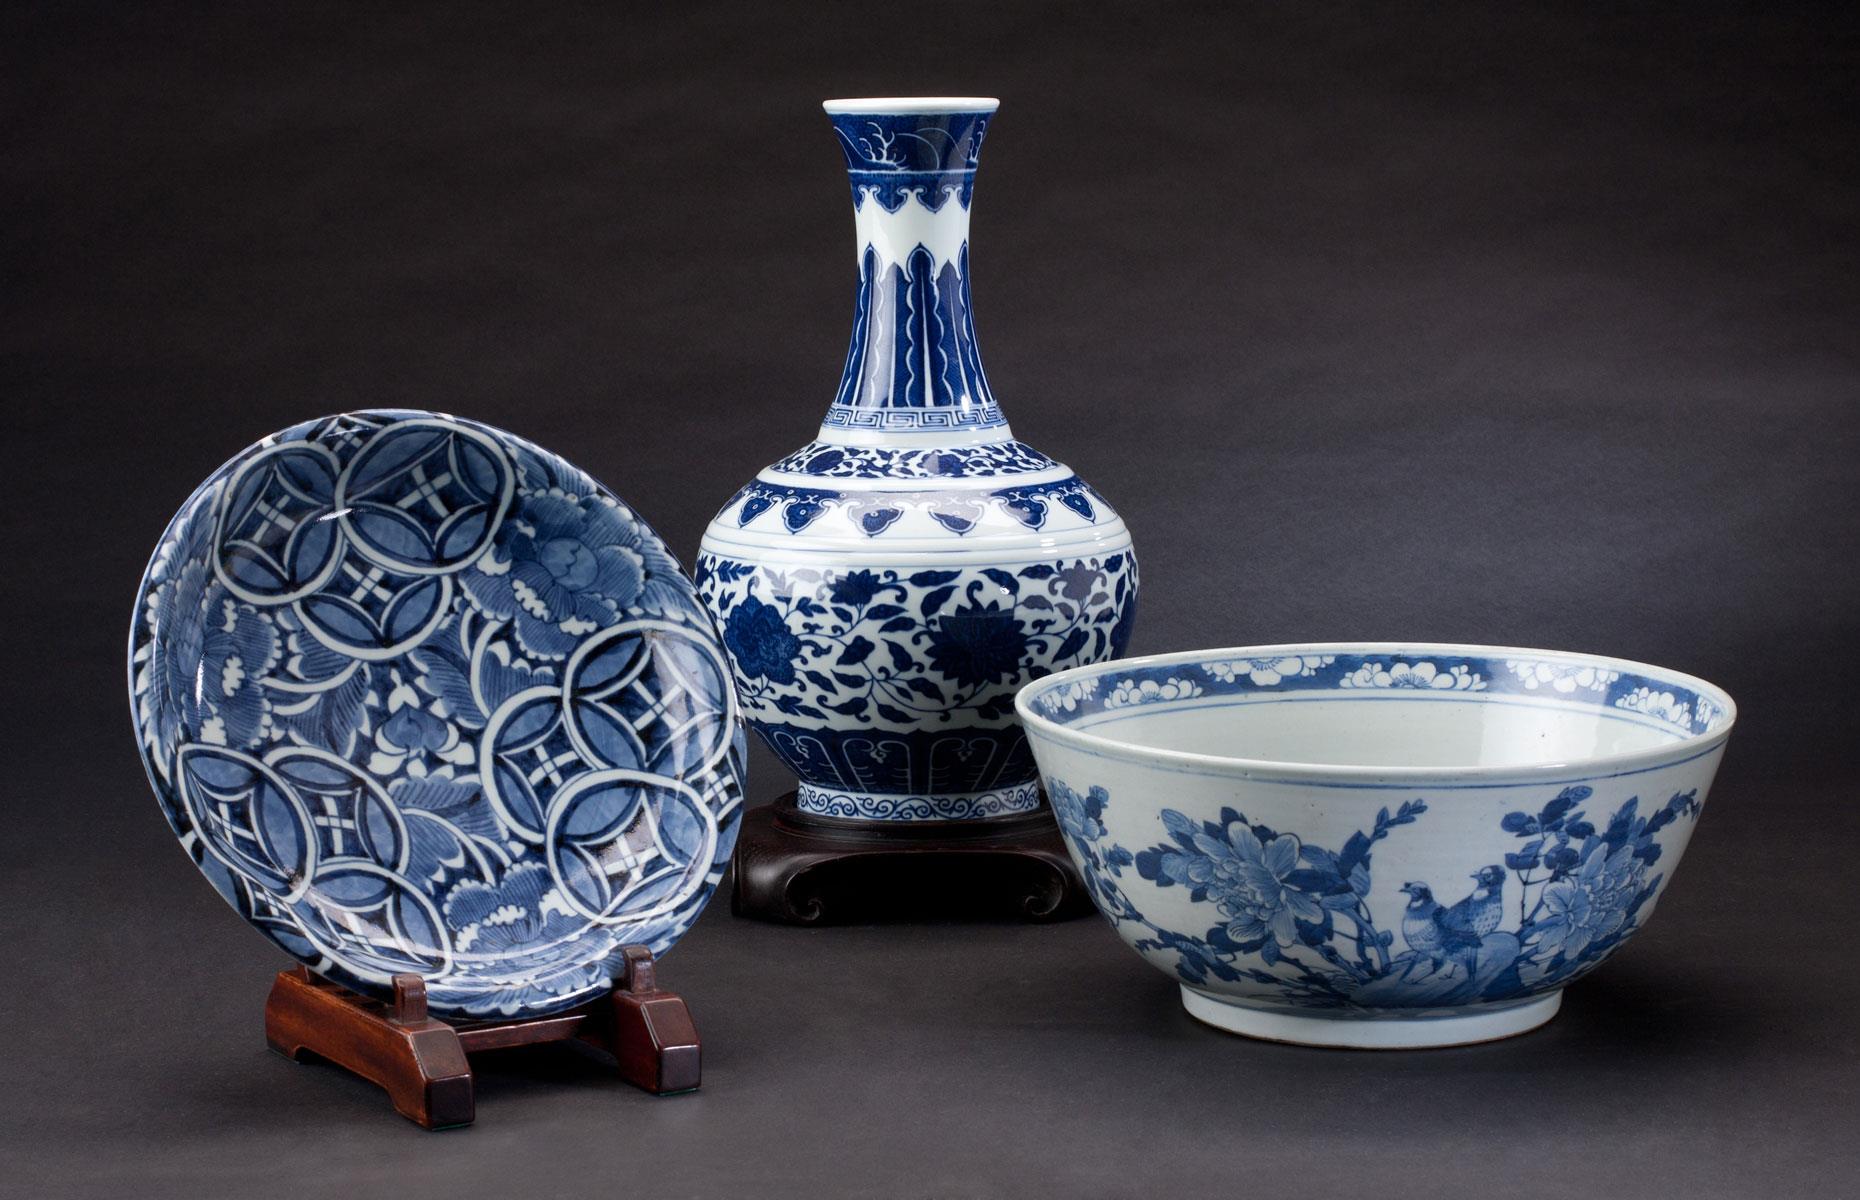 10th. Chinese ceramics: -12%